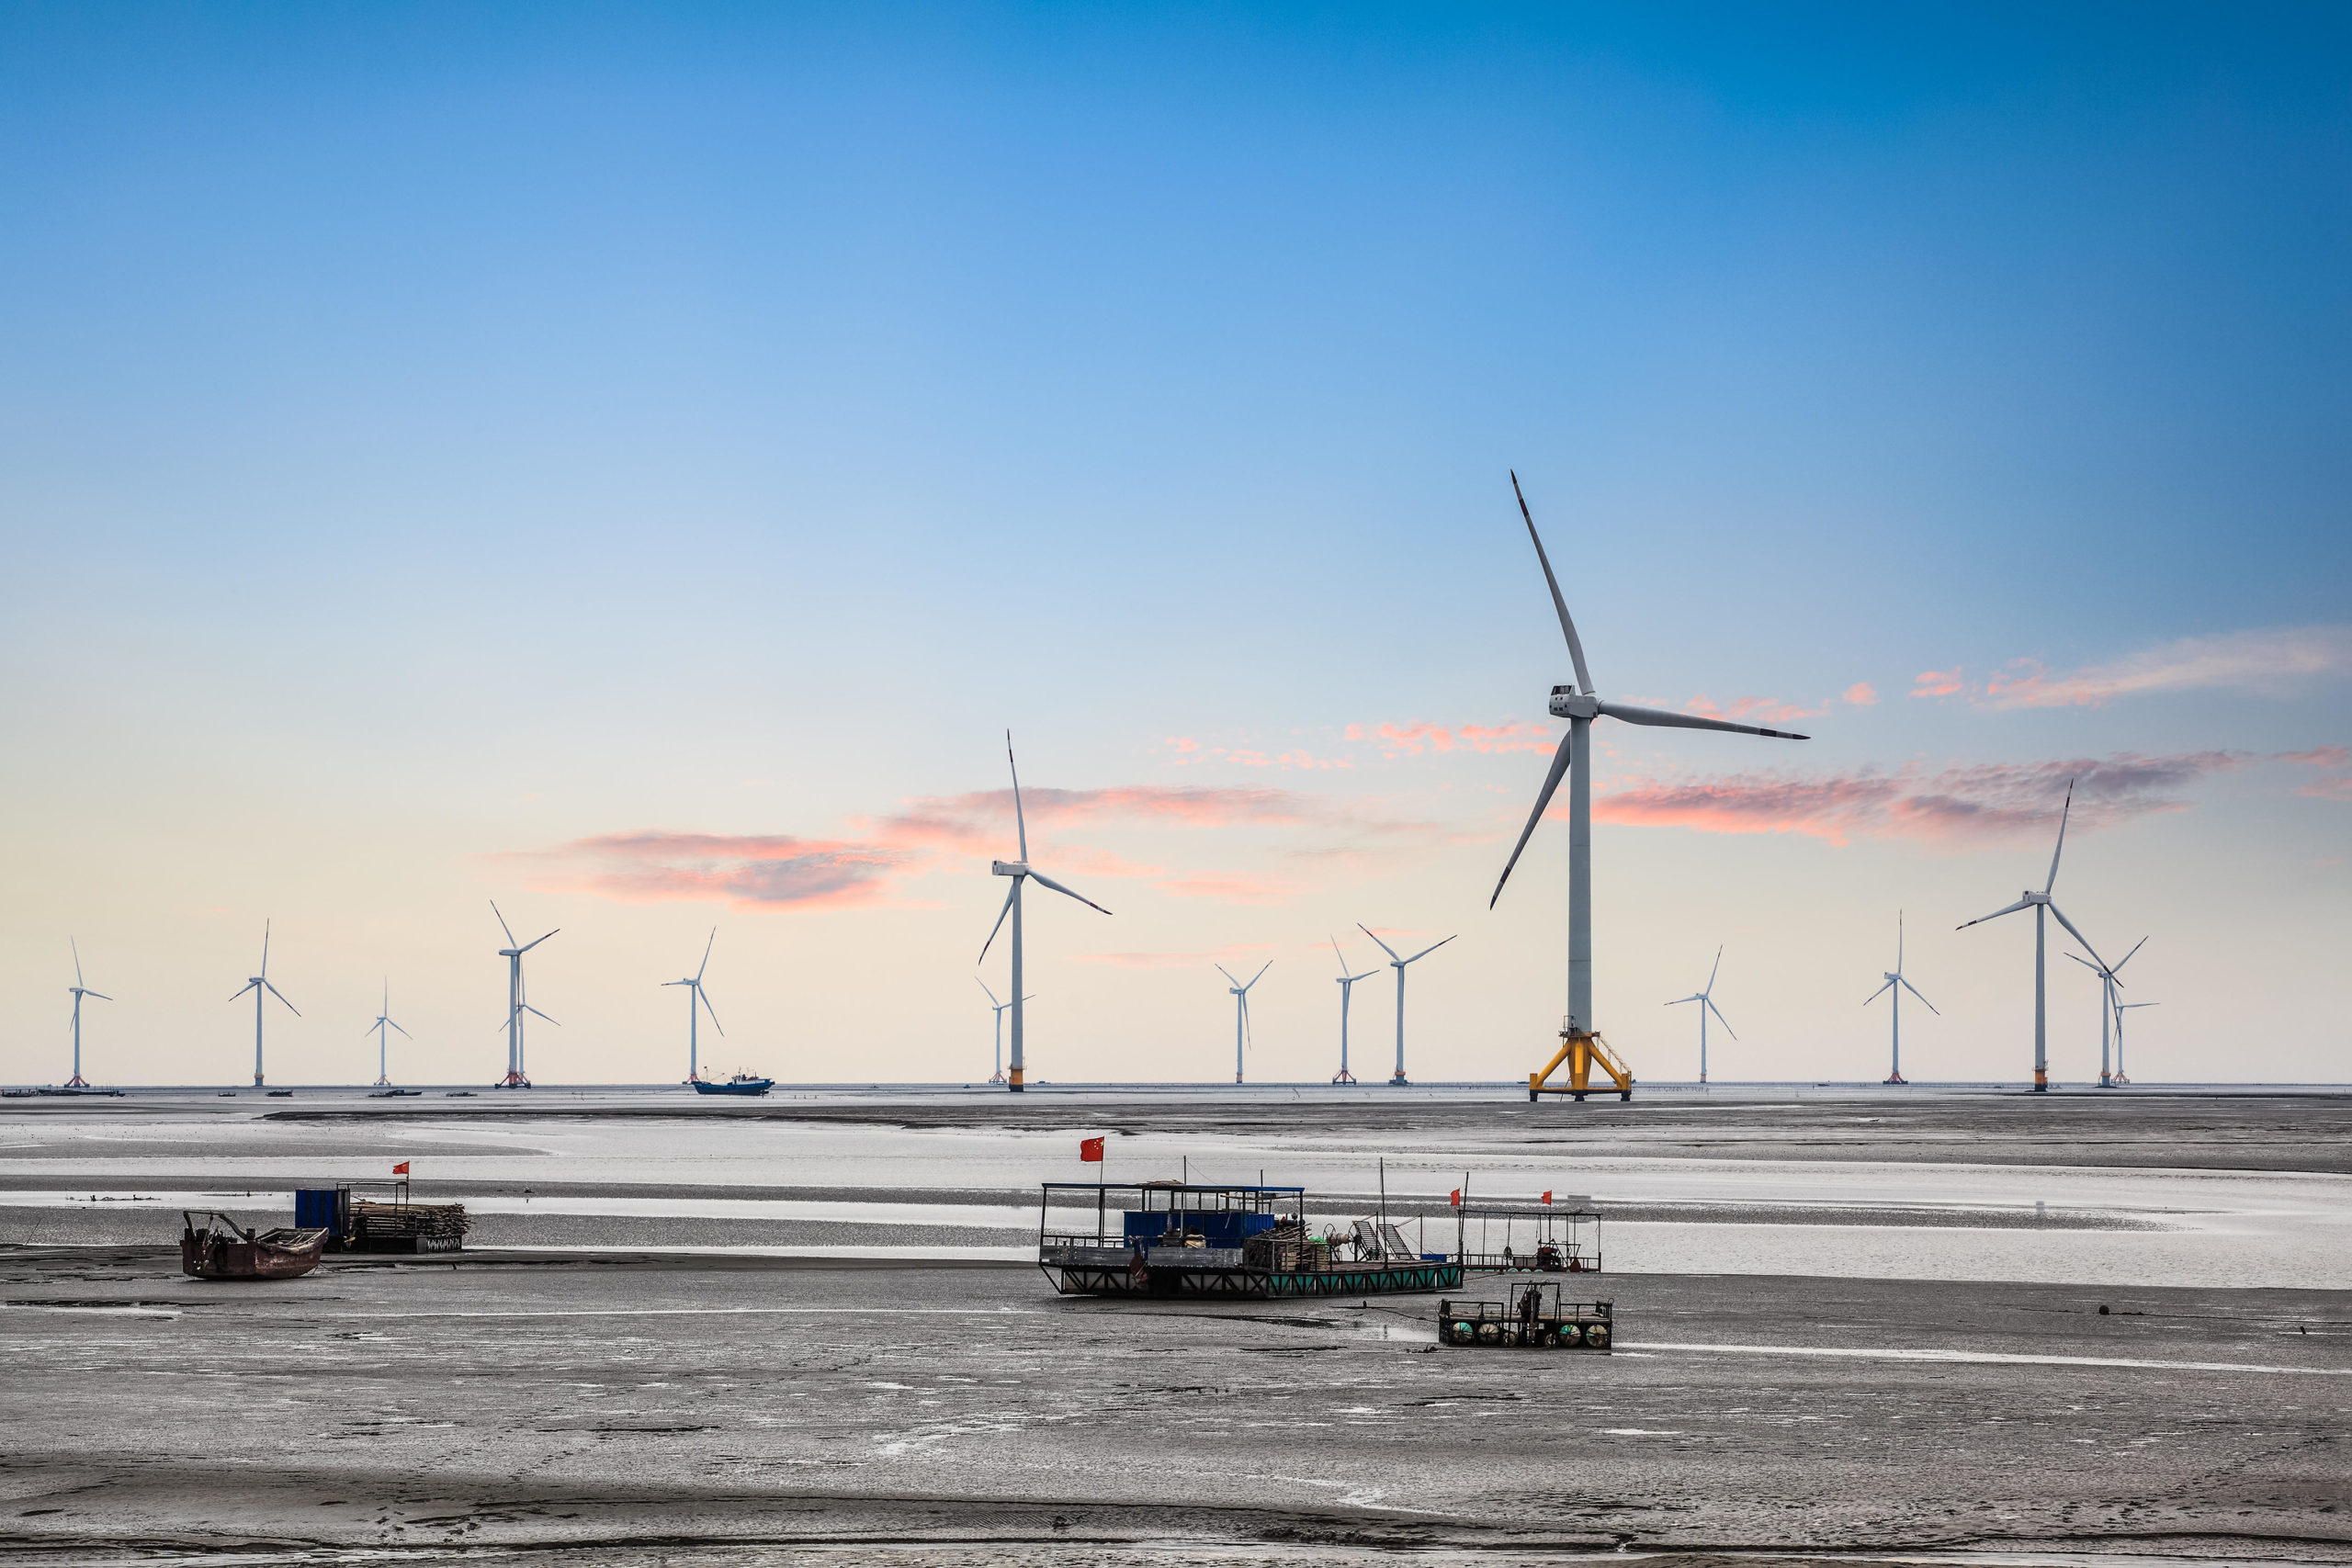 <p>An offshore wind farm in China (Image: Zhang Zhiwei / Alamy)</p>